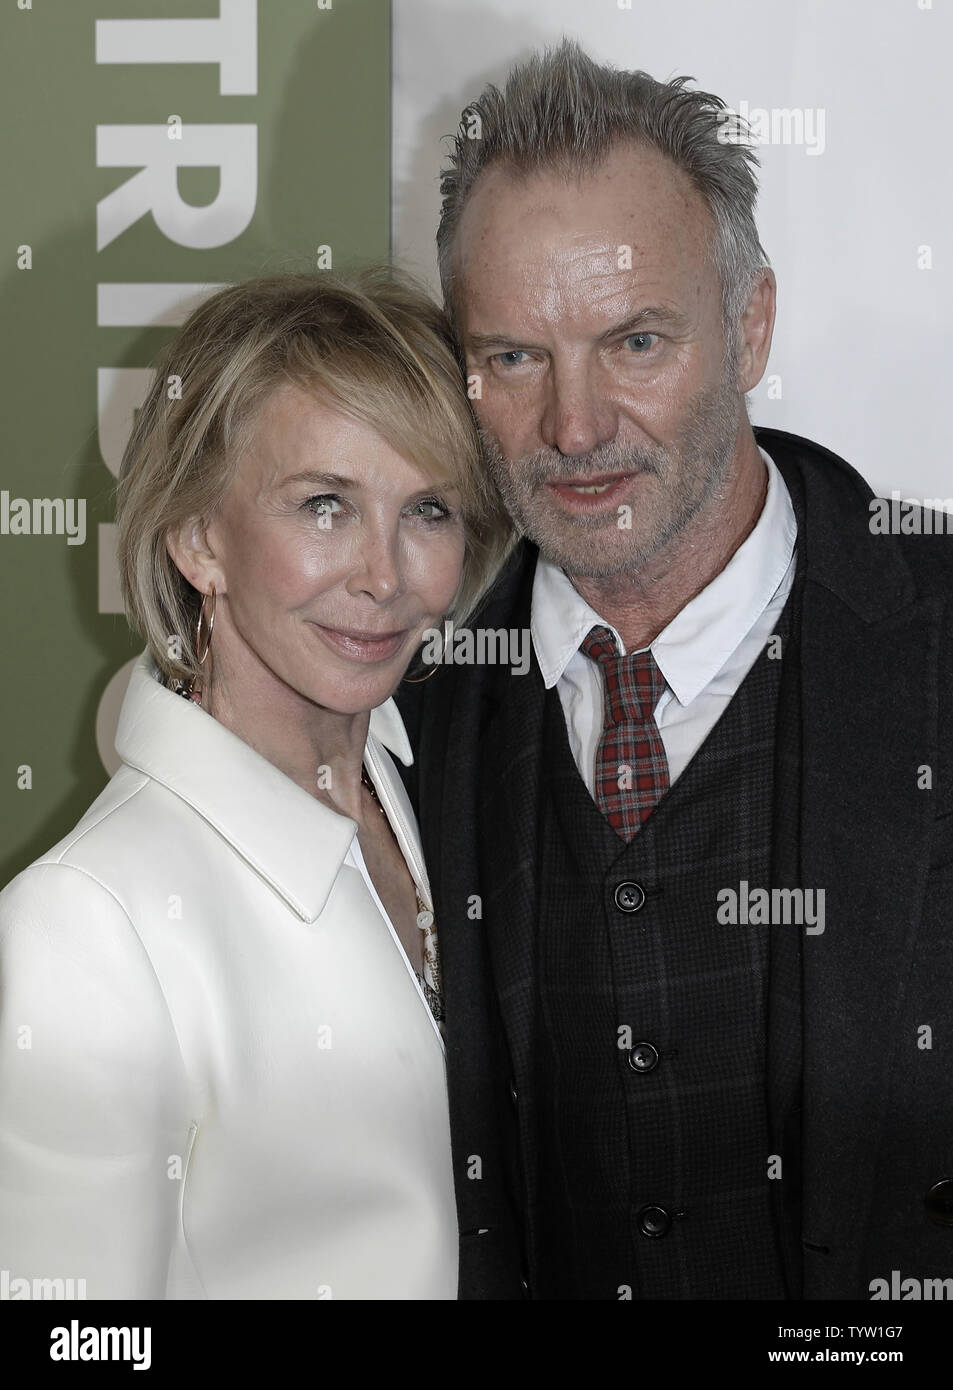 Musiker Sting und seine Ehefrau Trudie Styler nehmen an der 35. Jahrestag des Film "Spinal Tap" auf dem Tribeca Film Festival 2019 am 27. April 2019 in New York City. Foto von Peter Foley/UPI Stockfoto